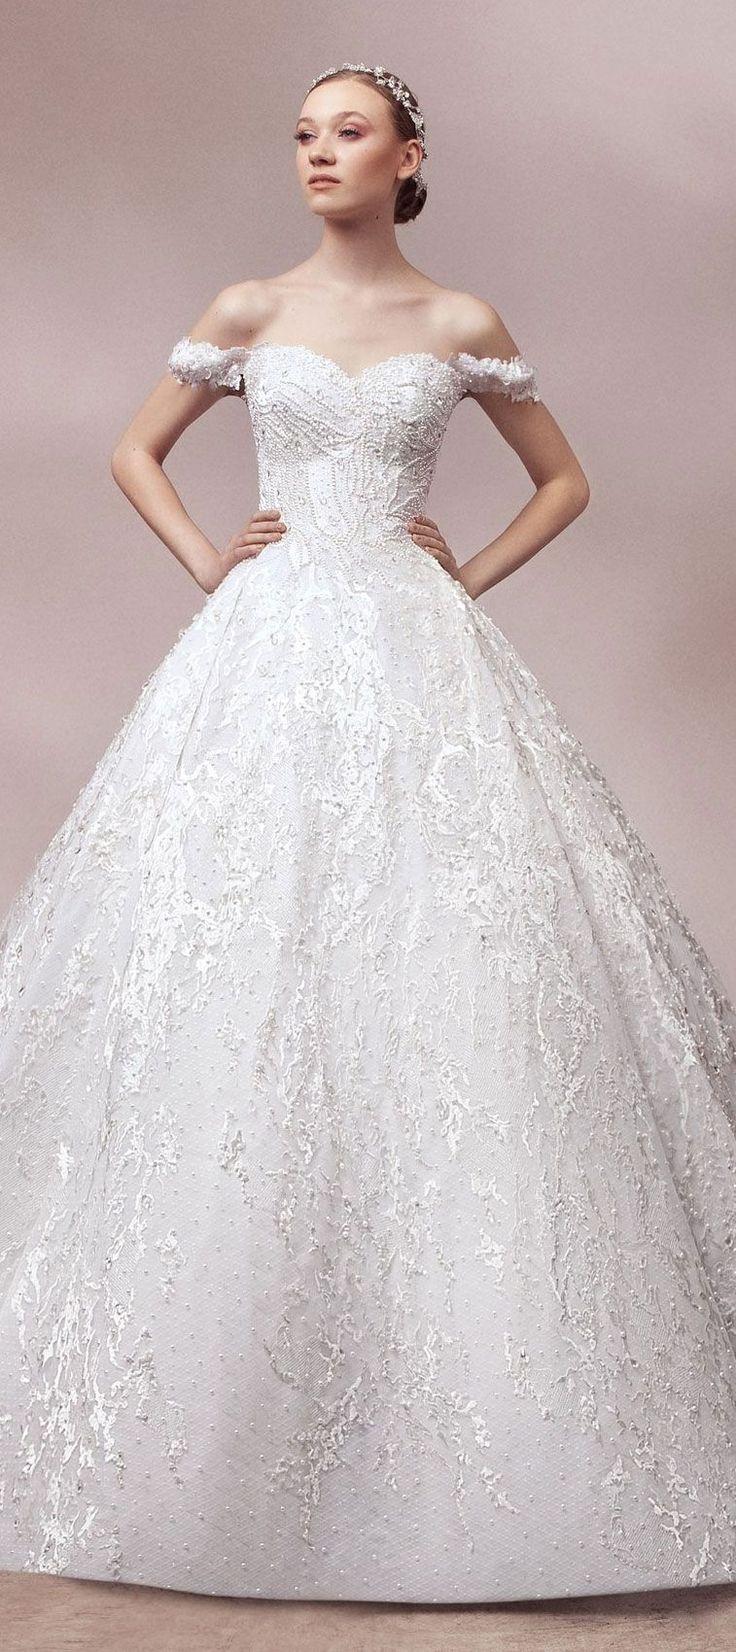 زفاف - Naja Saade Couture 2018 Wedding Dresses “Gaea” Bridal Collection